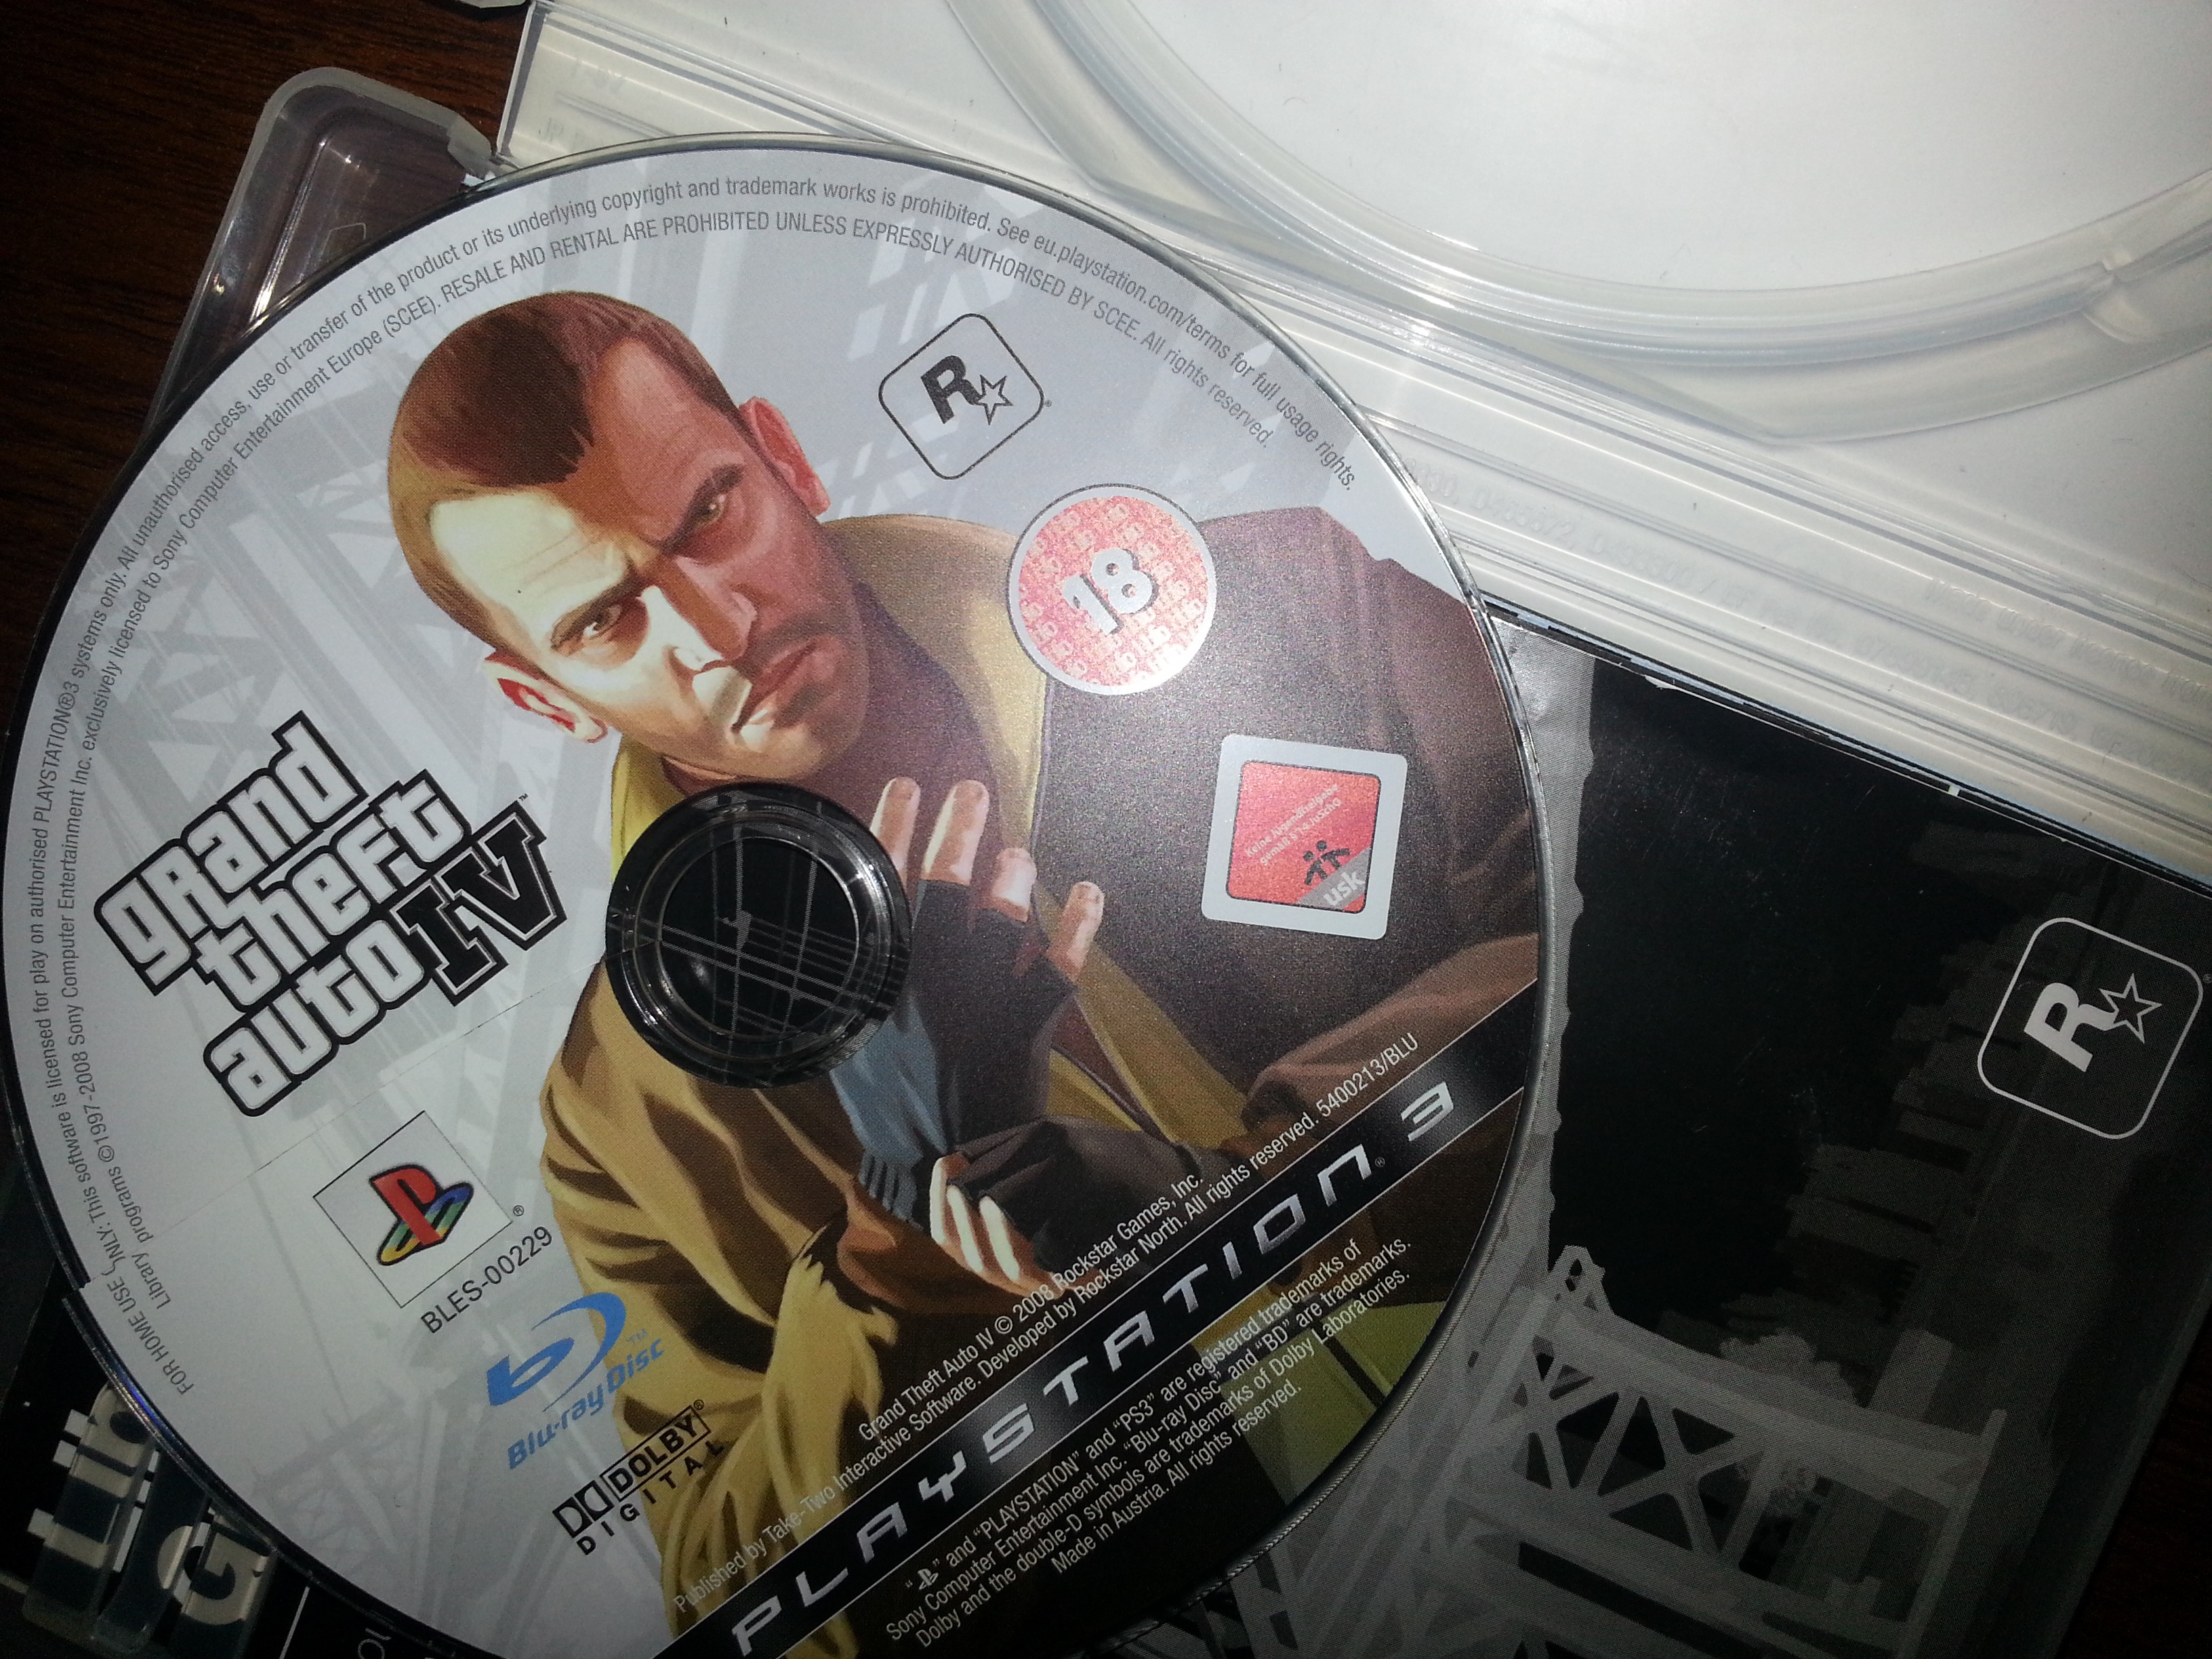  PS3'ün GTA 4 CD'sini Kırdım :(